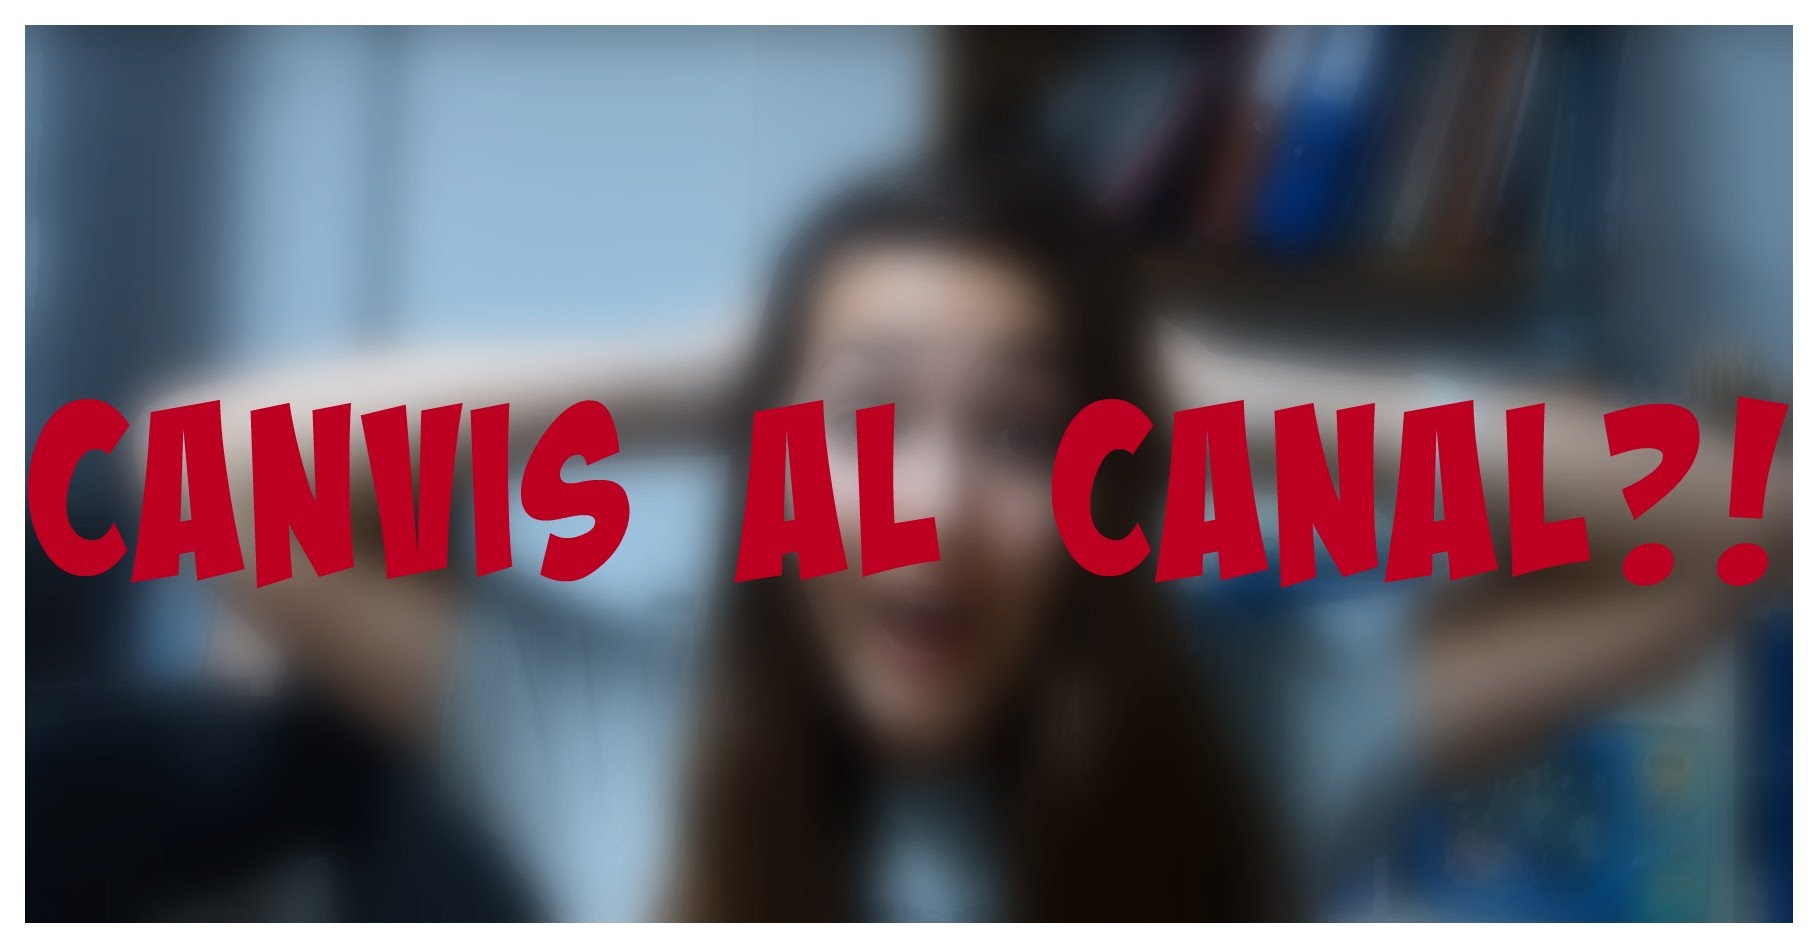 CANVIS AL CANAL? | Ban Anna de Retroscroll